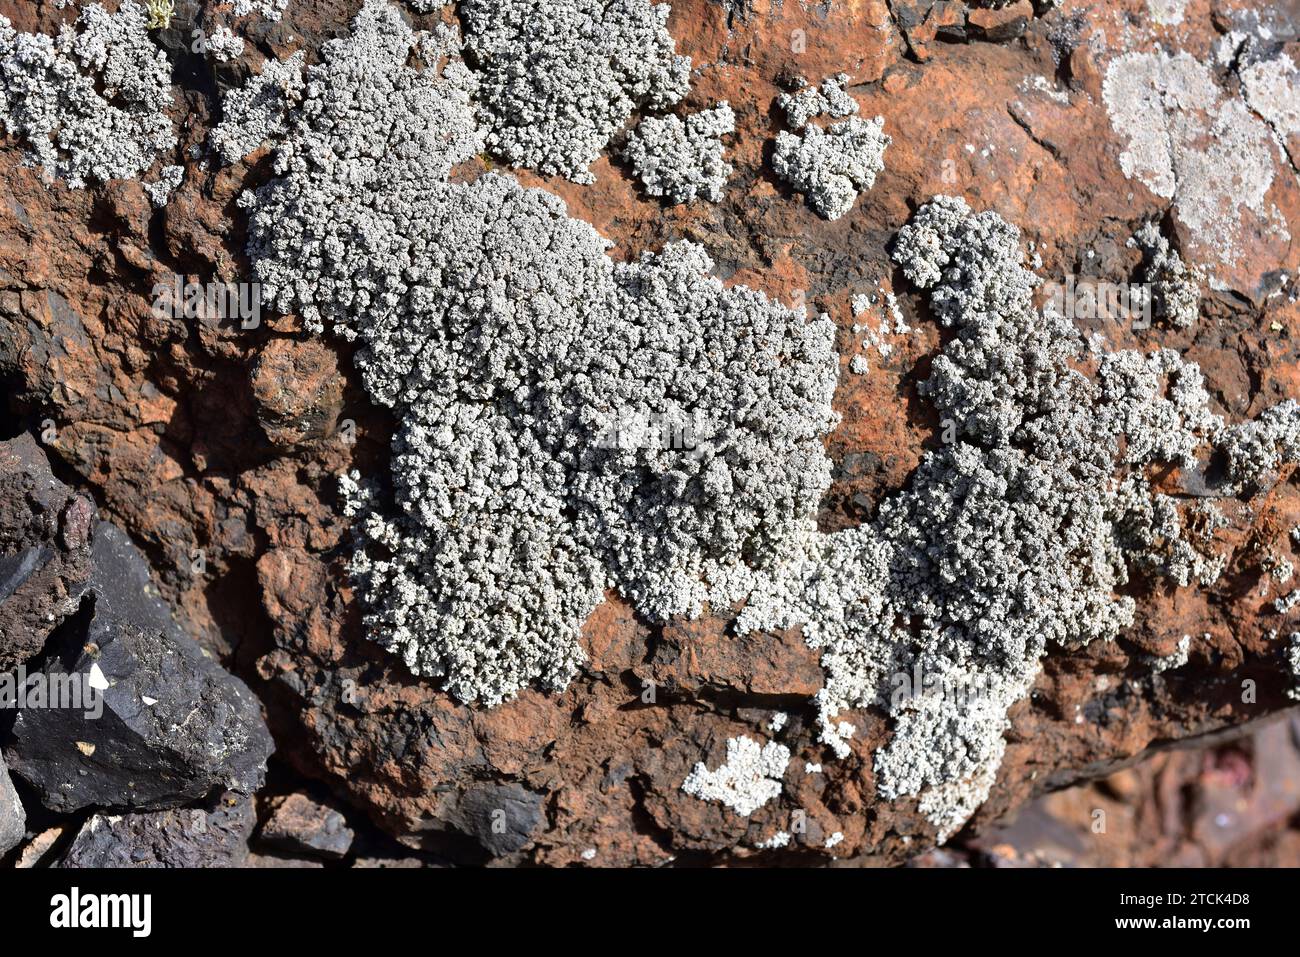 Stereocaulon vesuvianum is a fruticose lichen. This photo was taken in Lanzarote Island, Canary Islands, Spain. Stock Photo